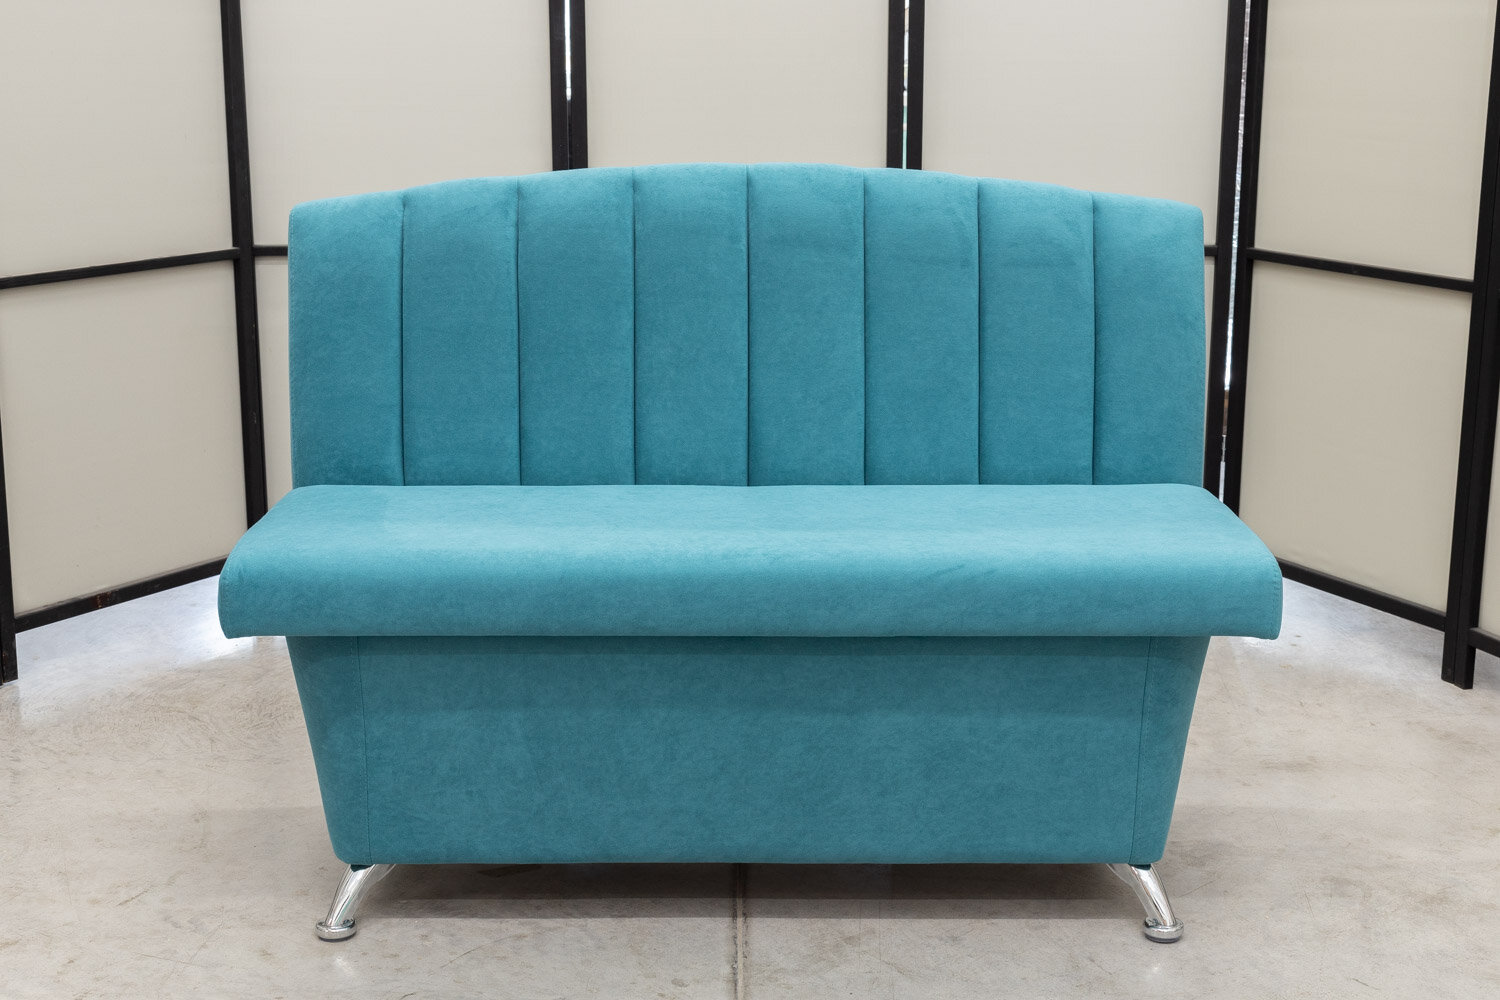 Кухонный диван Альт с ящиком, 120х56 см, обивка мебельный велюр, цвет сине-зеленый